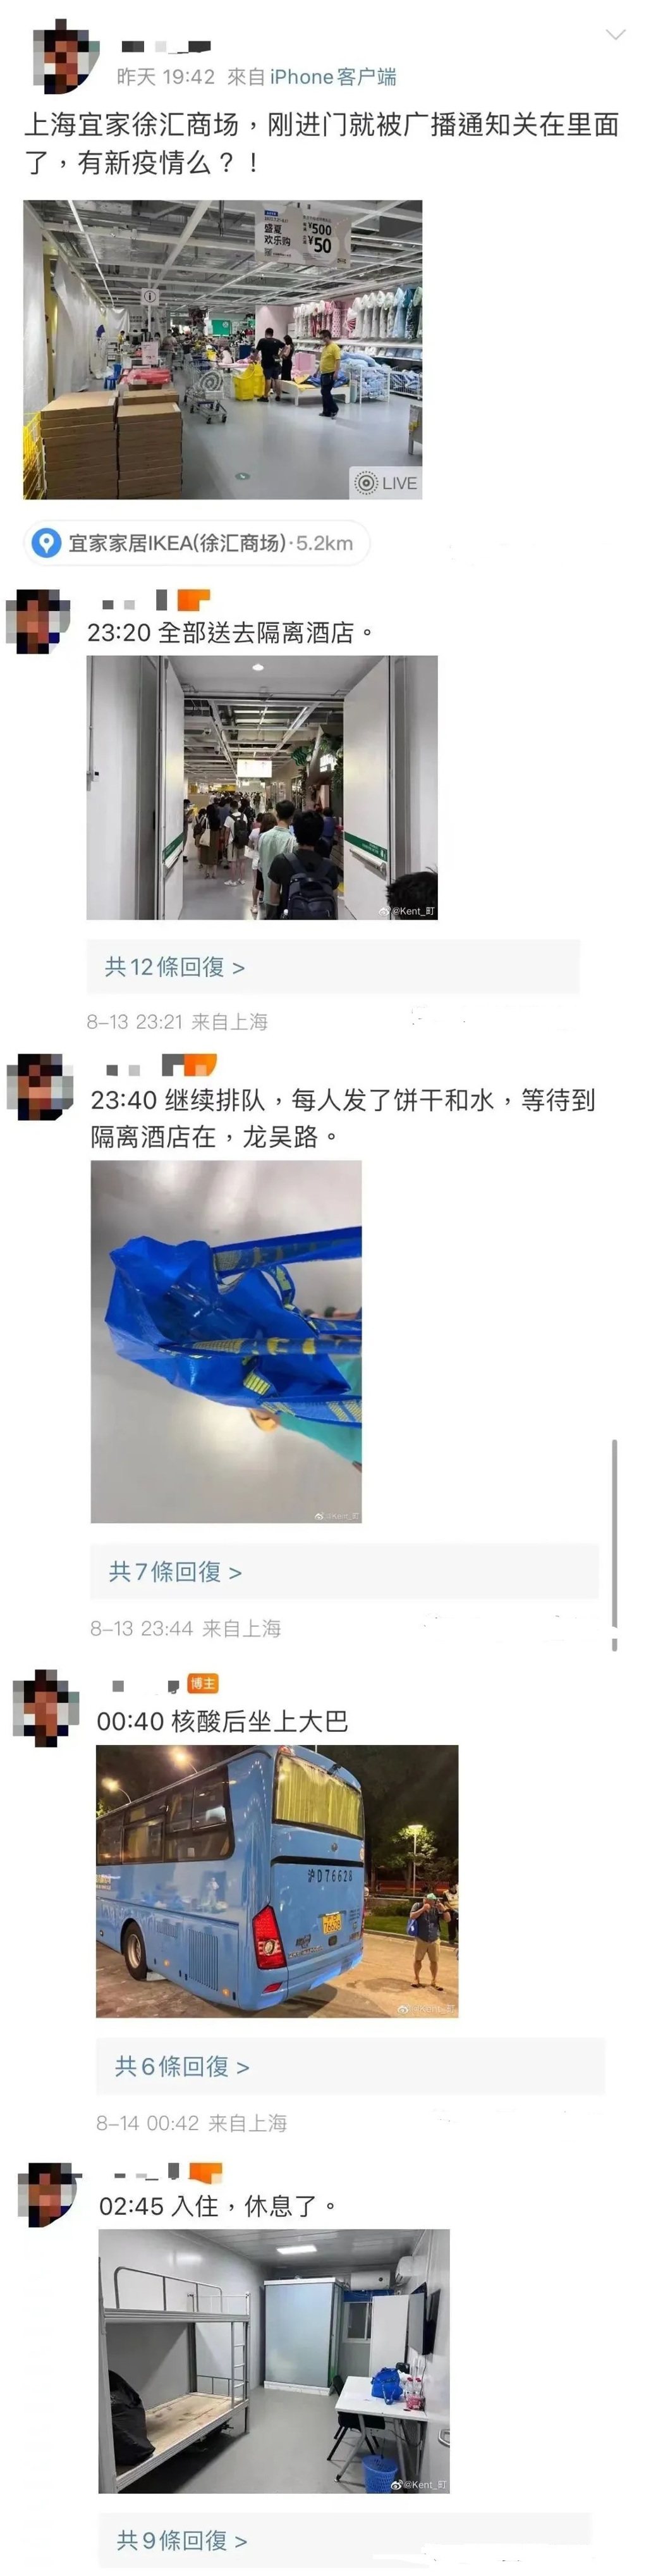 一位上海網友在微博上完整記錄，他13日晚間待在徐匯宜家，然後被轉移隔離的心路歷程...